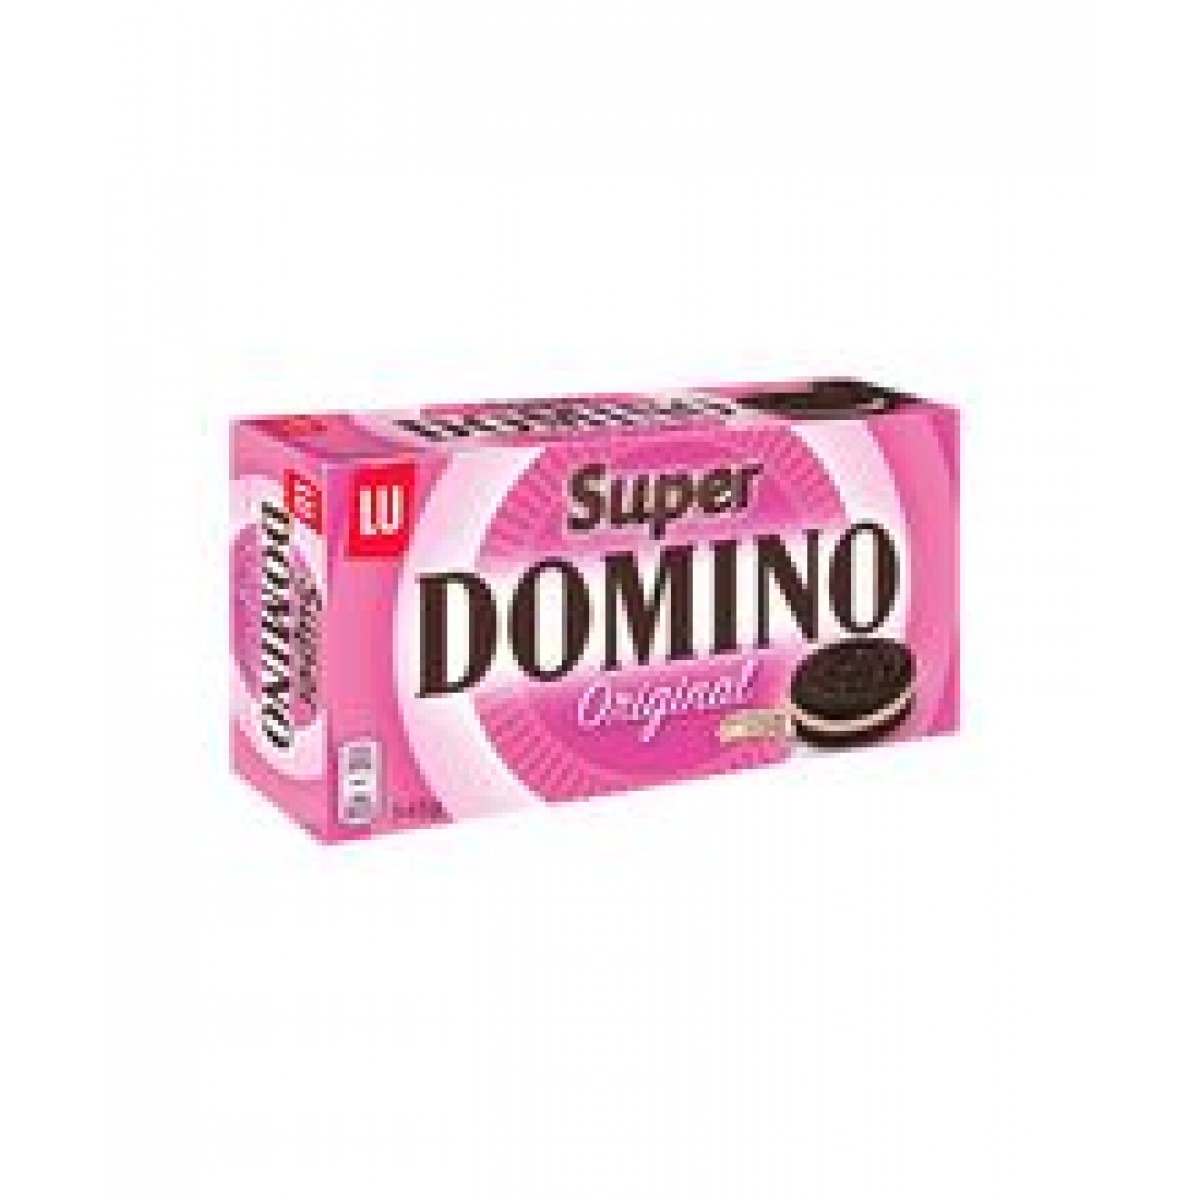 Super Domino original 345 g